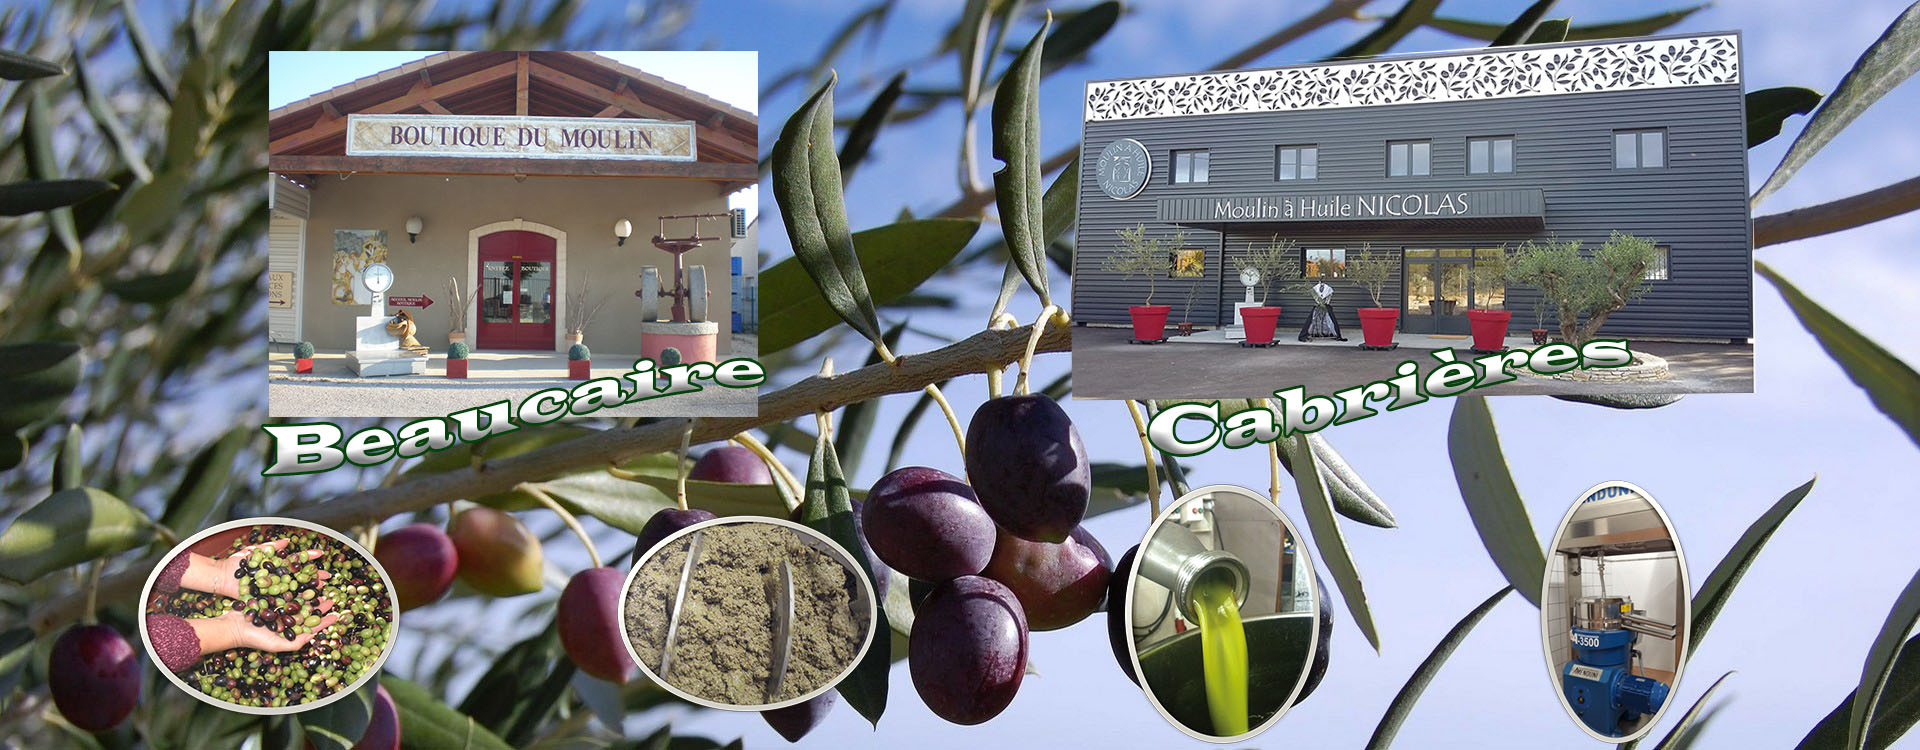 Fabrication de votre huile d'olive Beaucaire ou Cabrières